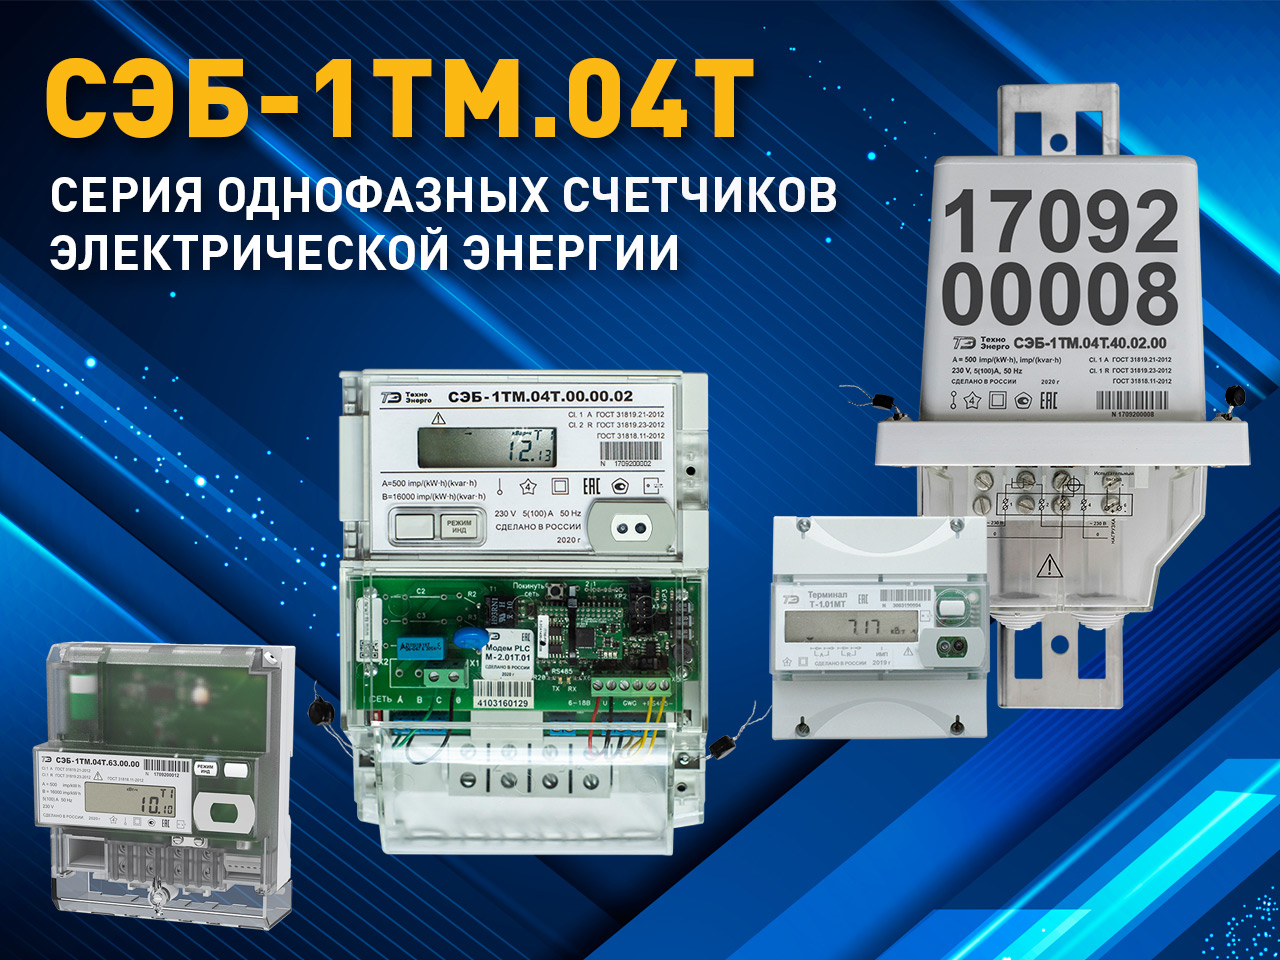 Новая серия однофазных счетчиков электроэнергии СЭБ-1ТМ.04Т